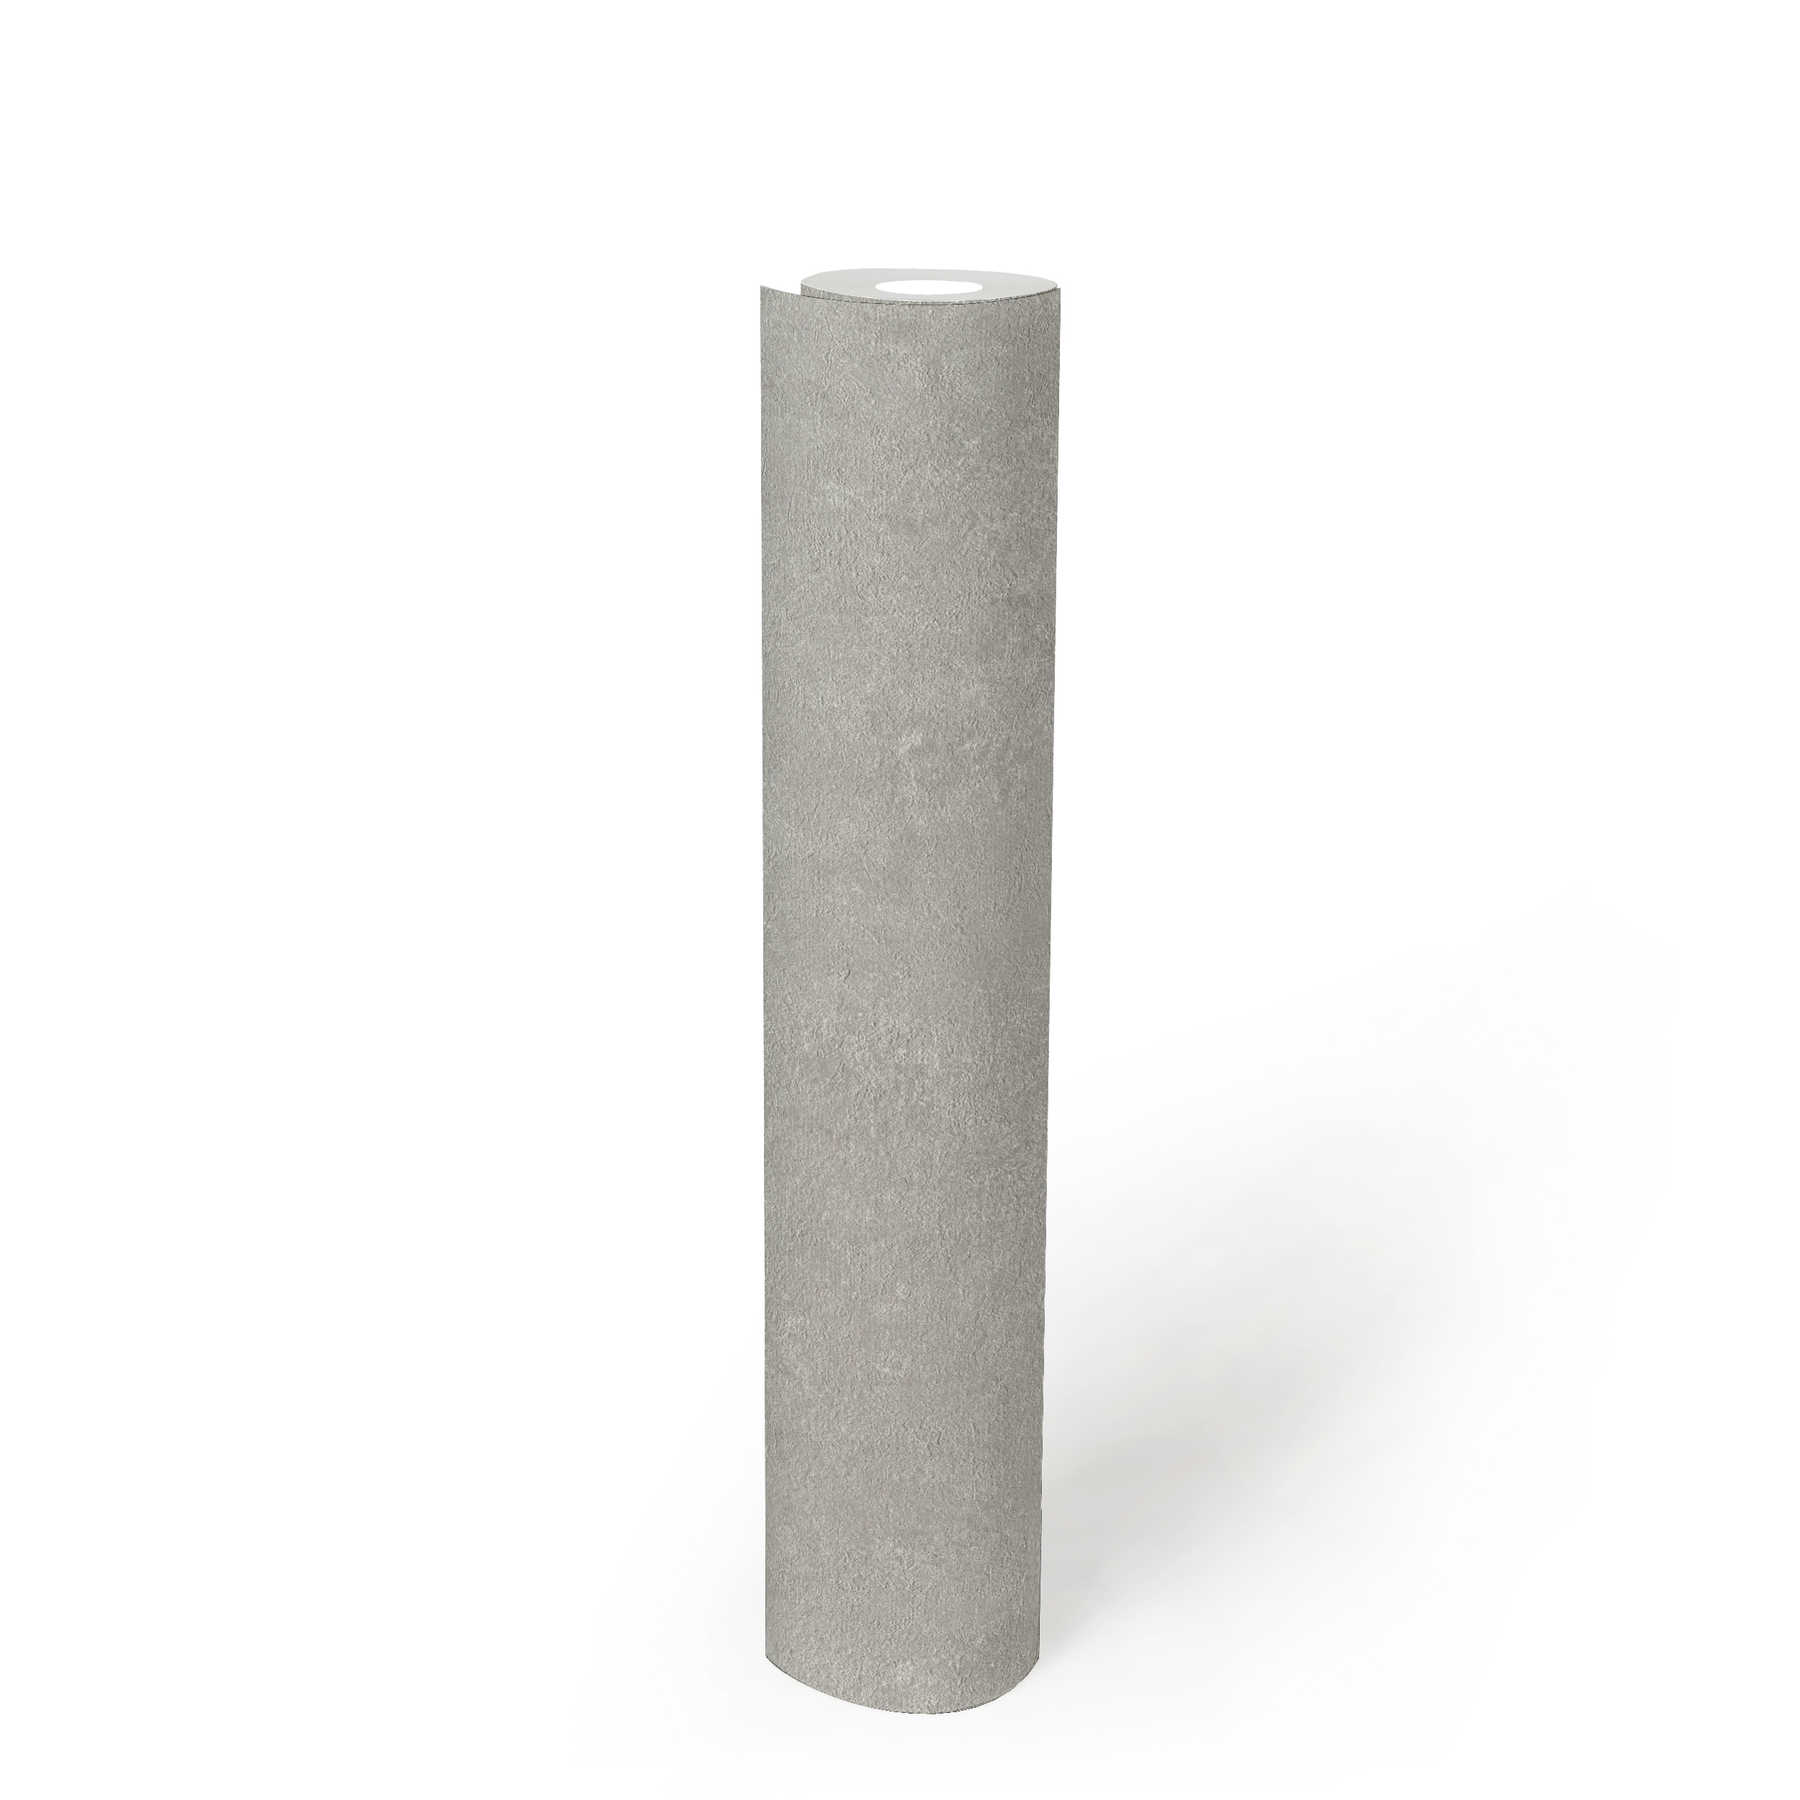             Papel pintado de aspecto metálico con toques de óxido en estilo industrial - gris
        